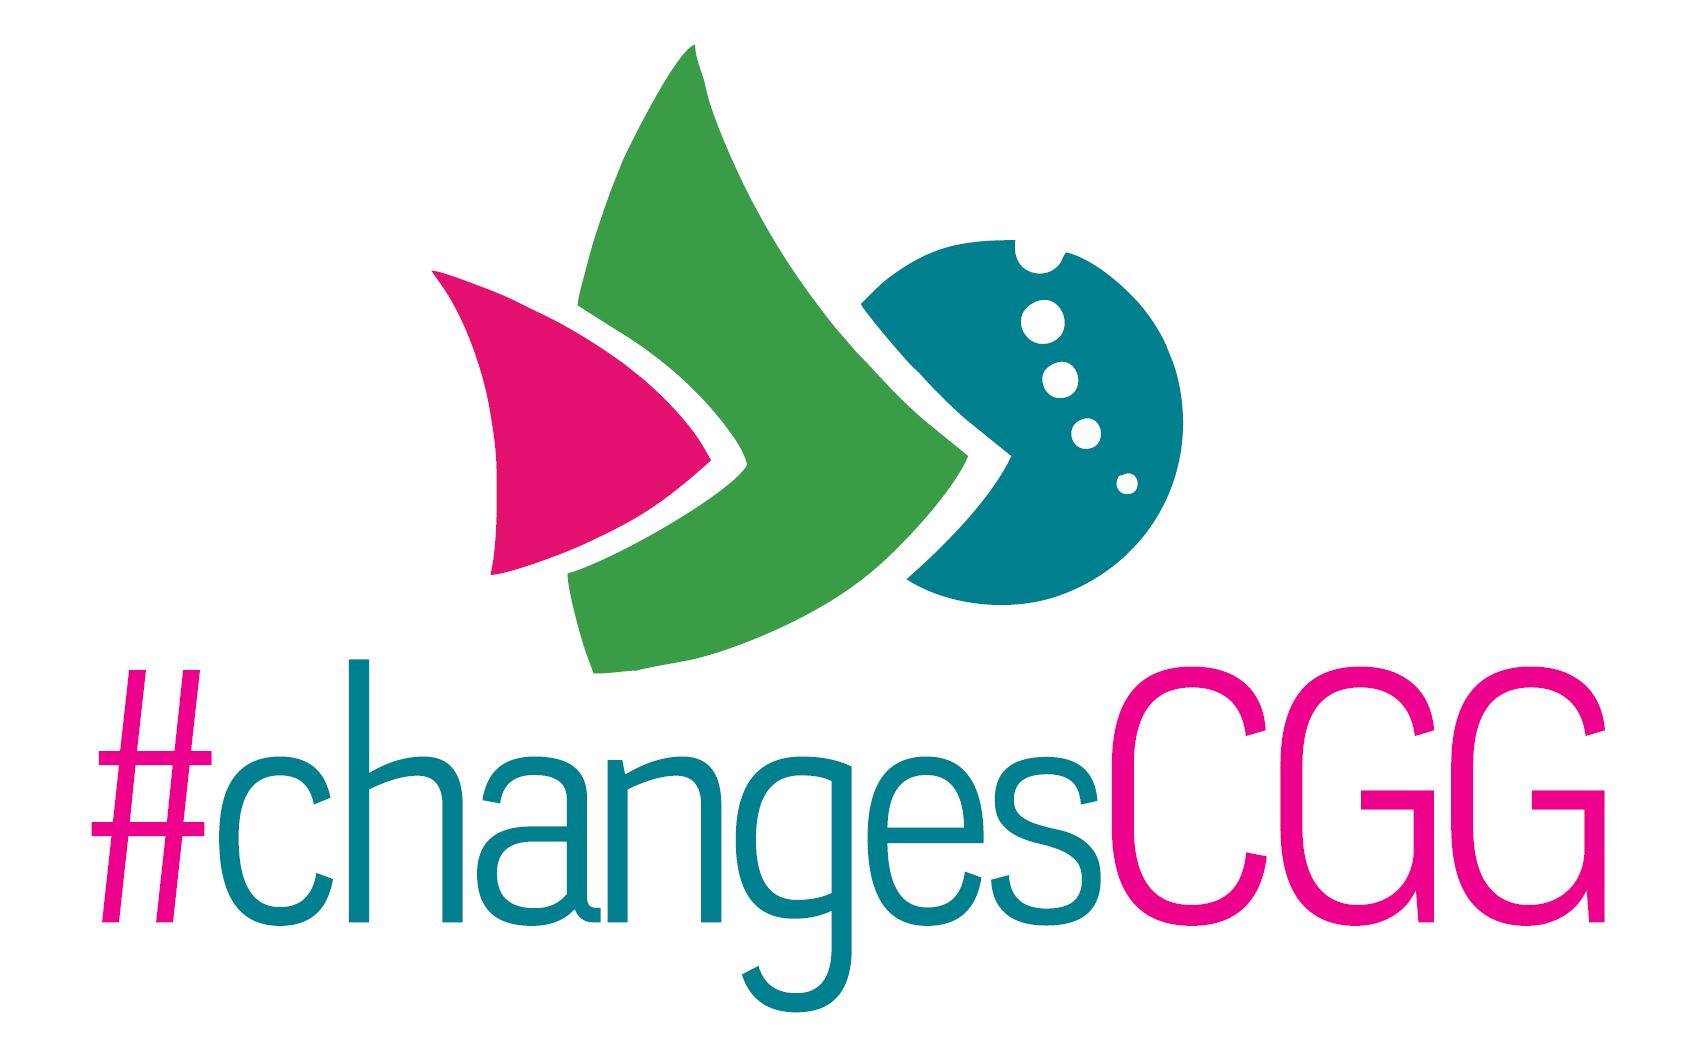 #changesCGG » City of Greater Geraldton